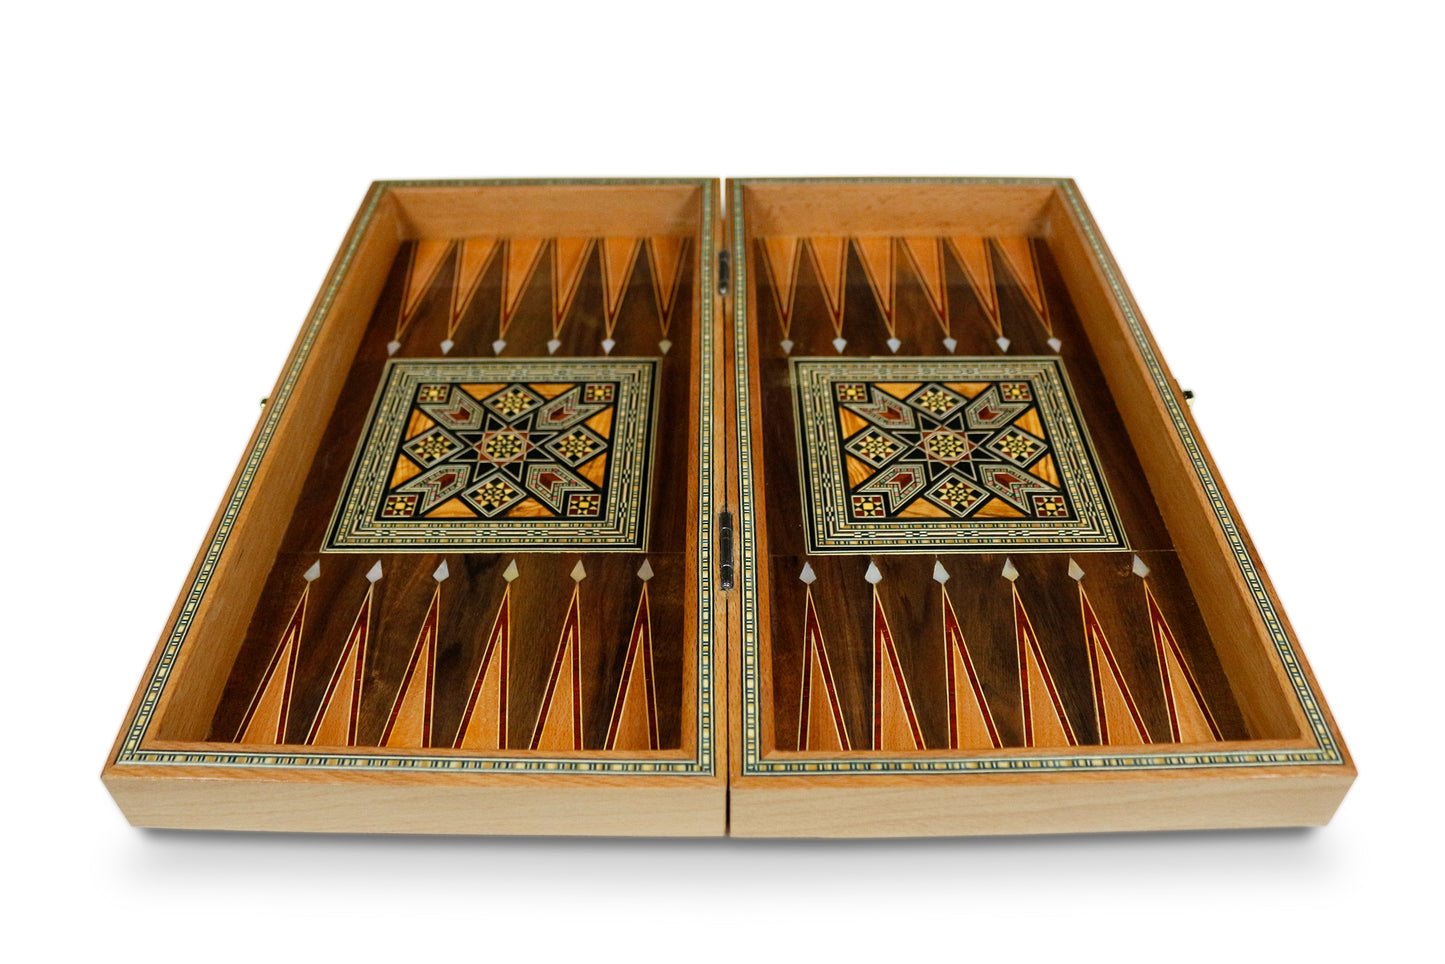 Holz Backgammon/Schach Brett inkl.Steine und Schachfiguren BT 414 F